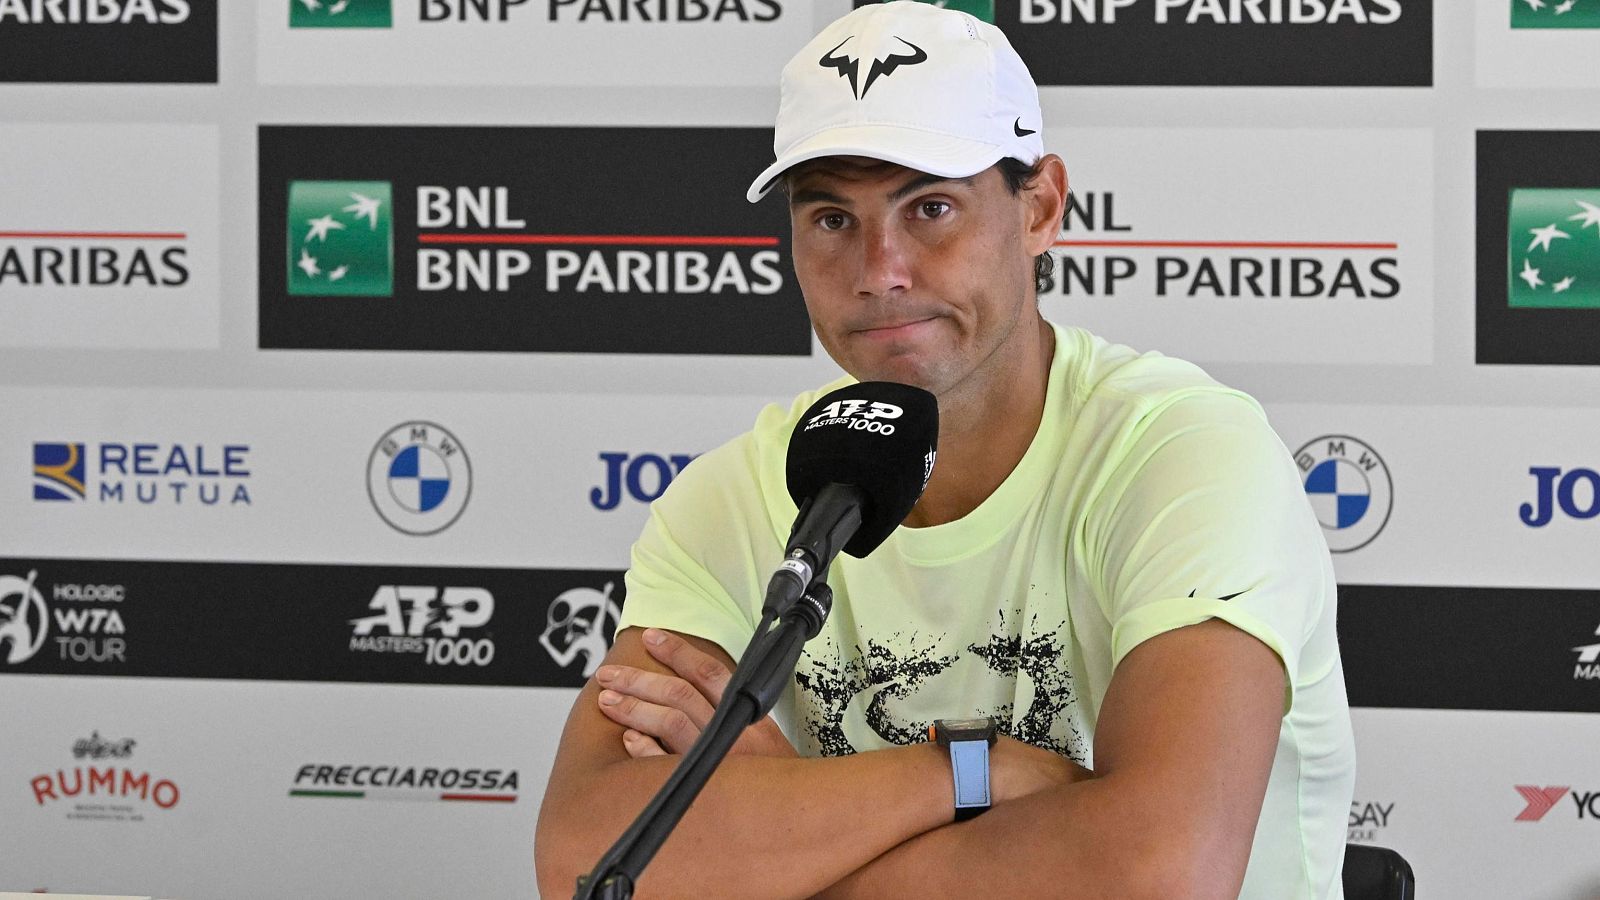 Las dudas de Rafa Nadal sobre si estará en Roland Garros